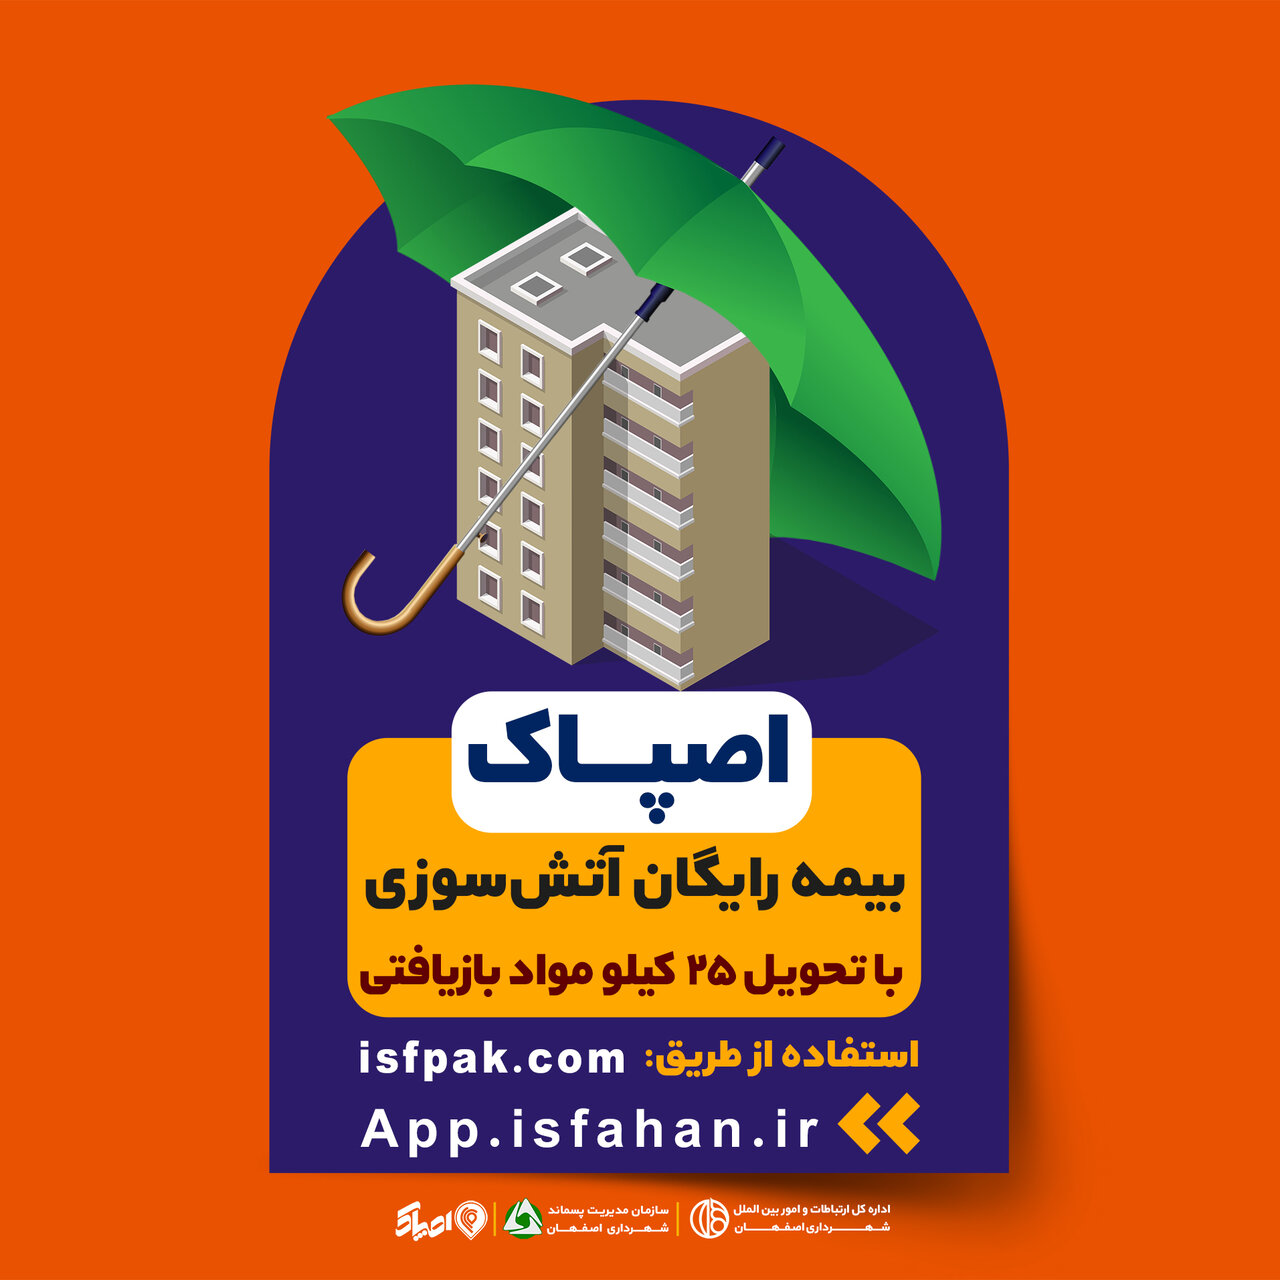 «اصپاک» روی تابلوهای شهری اصفهان نقش بست